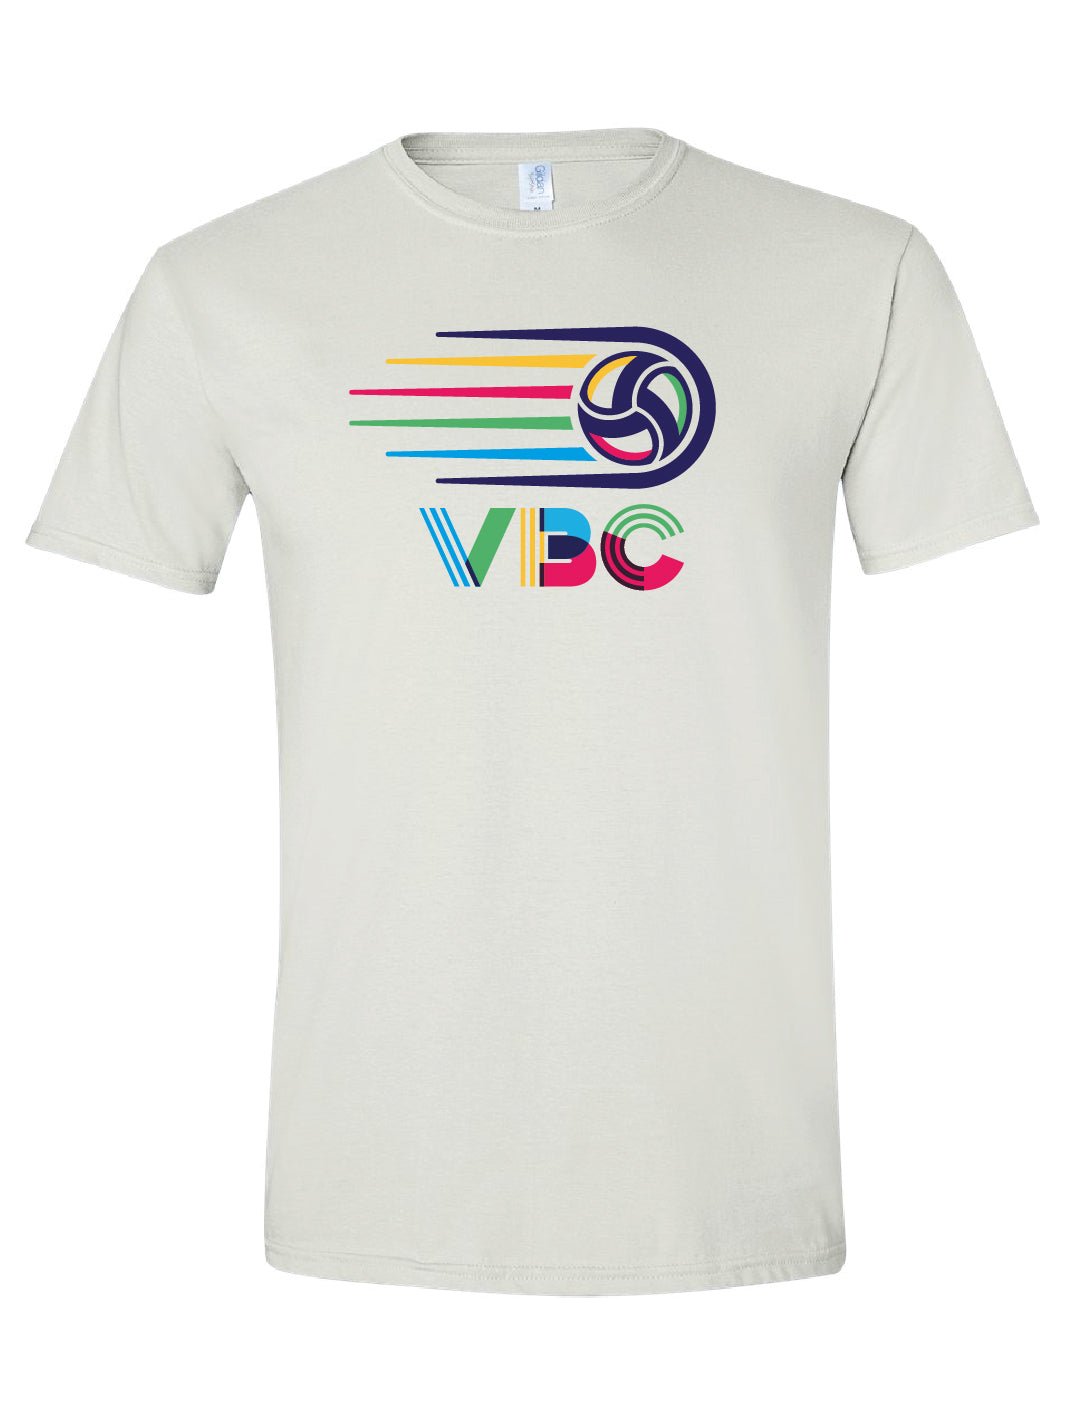 VBC Comet T-shirt - Oddball Workshop